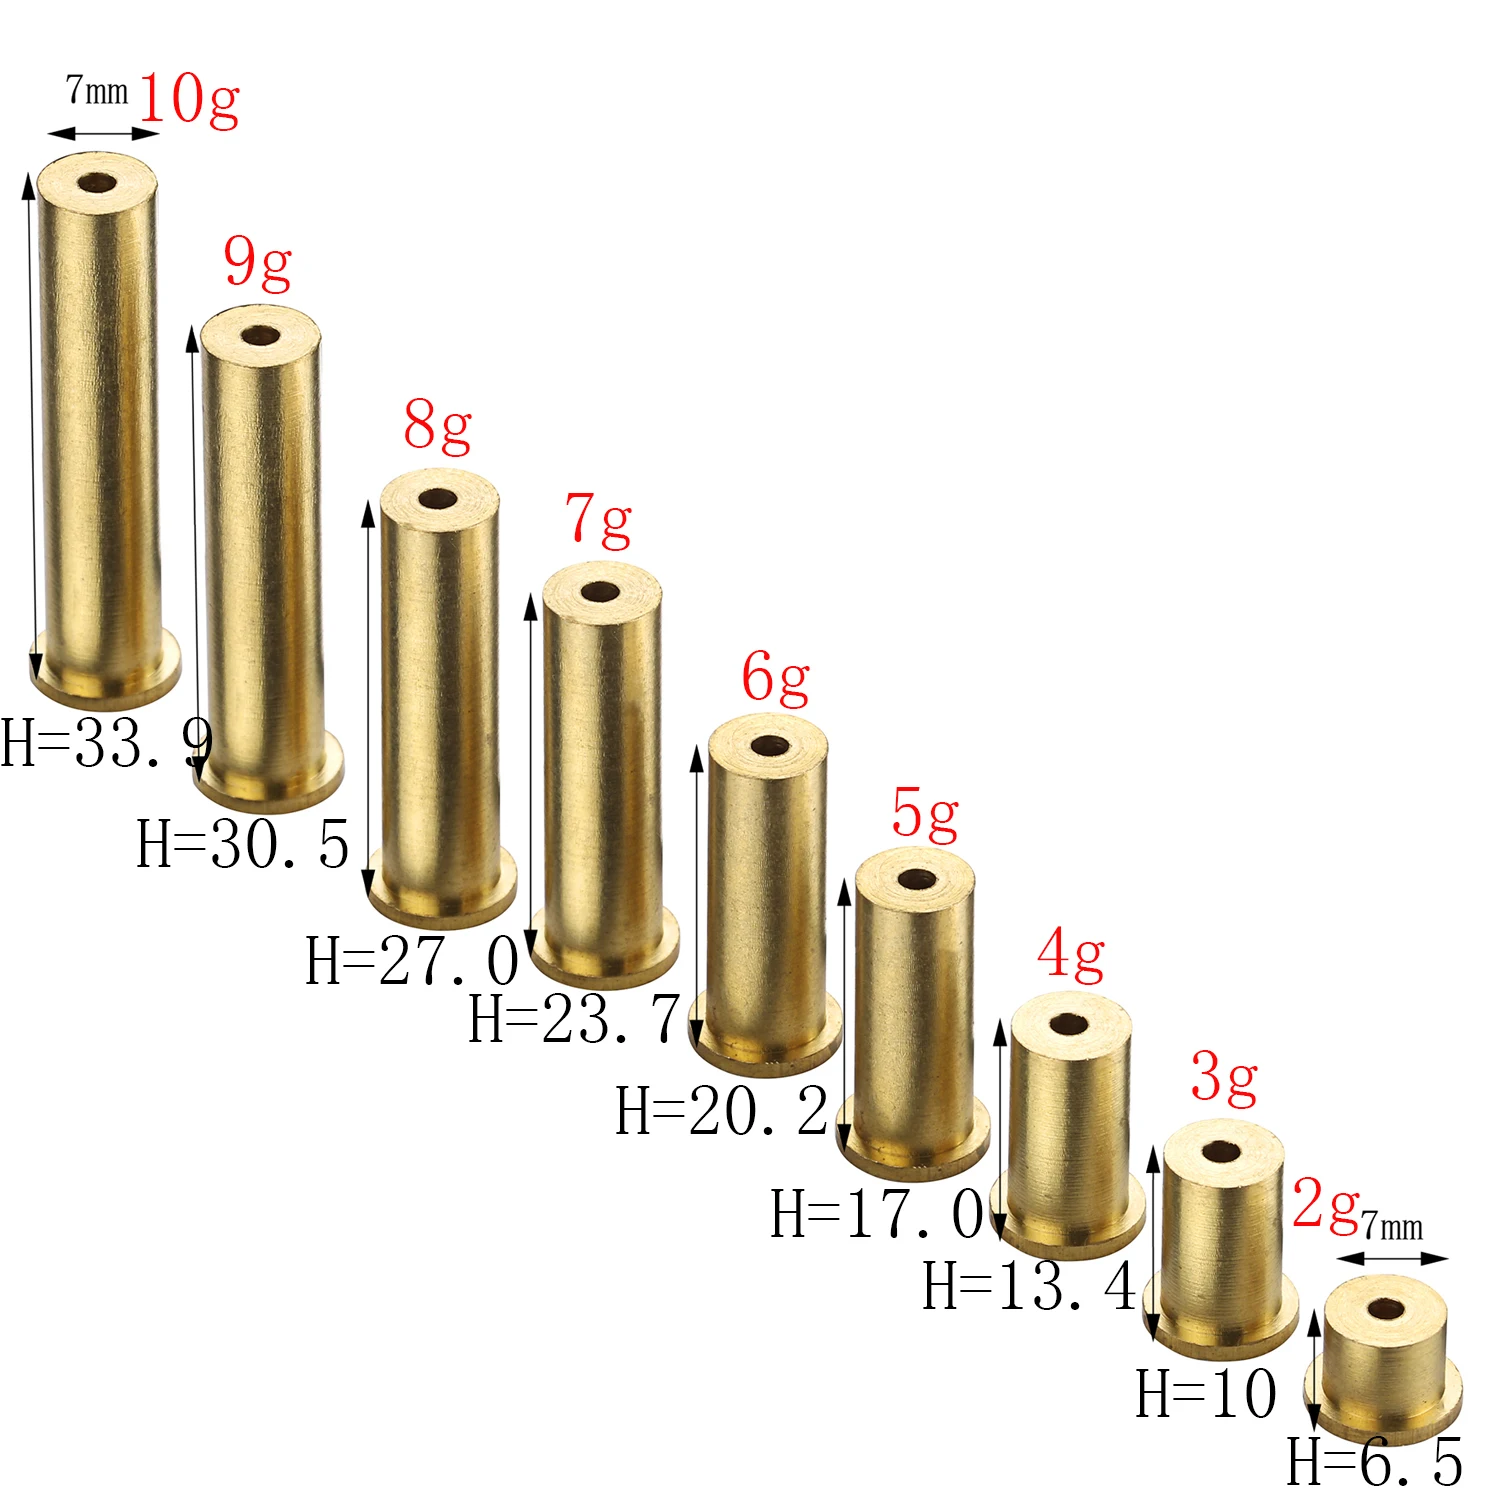 
Golf Brass Shaft Tip Plug Swing Weight   2g3g4g5g6g7g8g9g10g for golf Iron shaft  (62554709261)